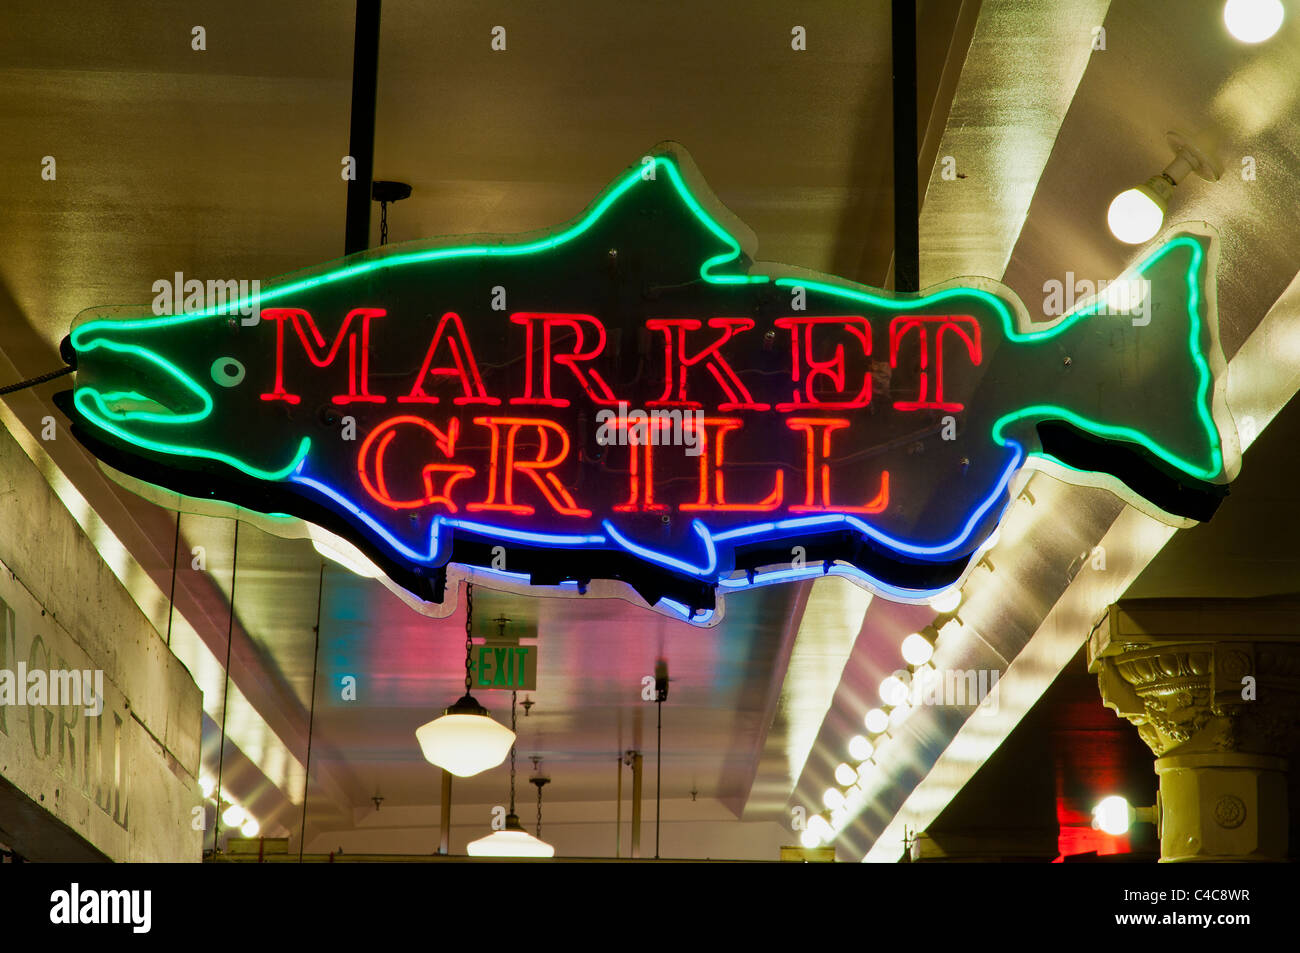 Cartel de neón de colores en forma de pez, Pike Place Market, Seattle, Washington, EE.UU. Foto de stock